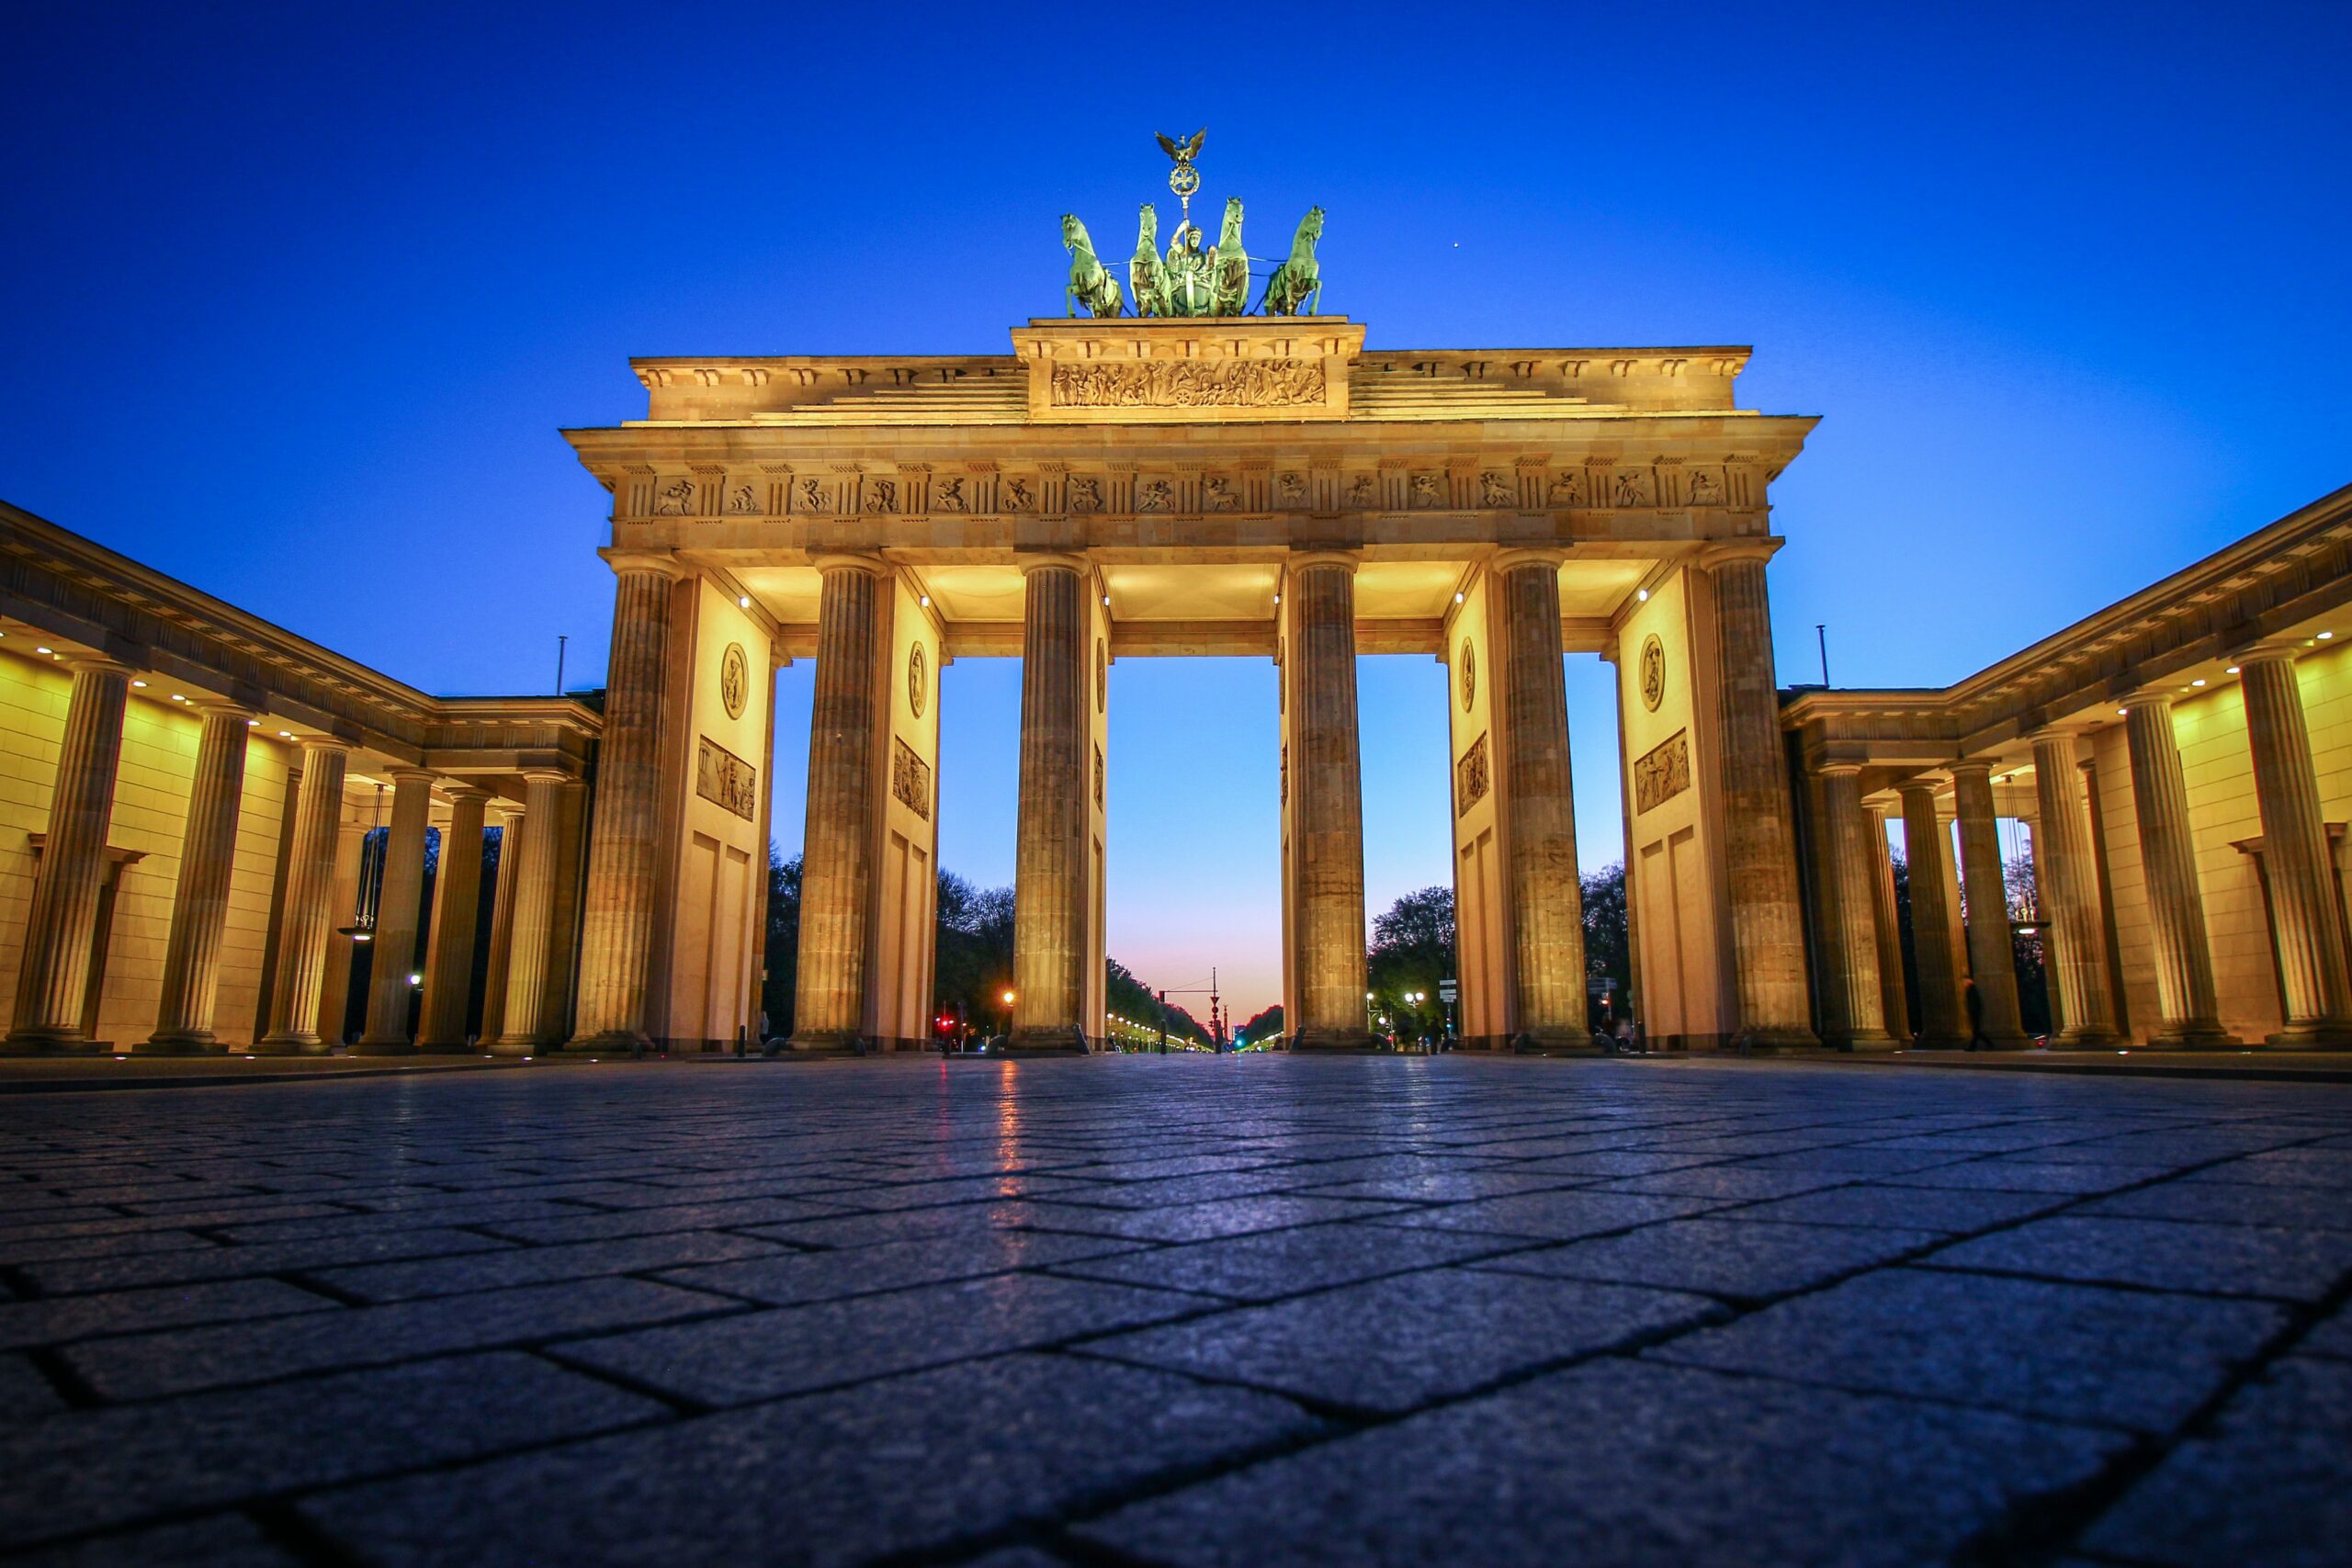 Portão de Brandemburgo, em Berlim, iluminado - Representa seguro viagem Berlim.